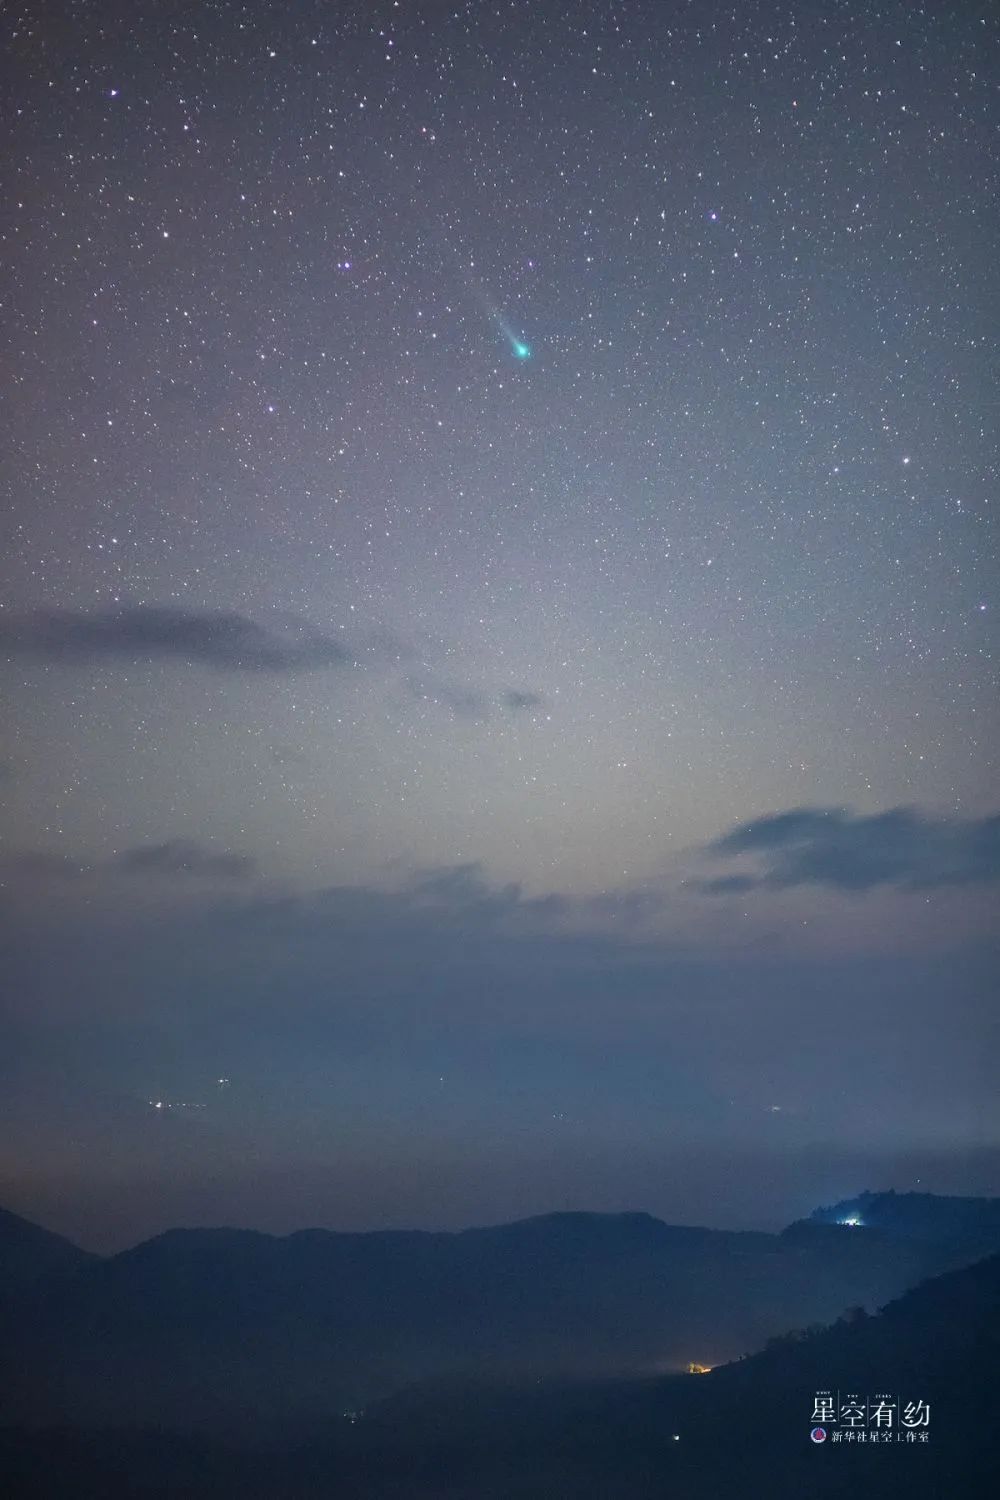 重庆市星空摄影爱好者戴建峰2021年12月10日在云南红河拍摄的伦纳德彗星。（本人供图）